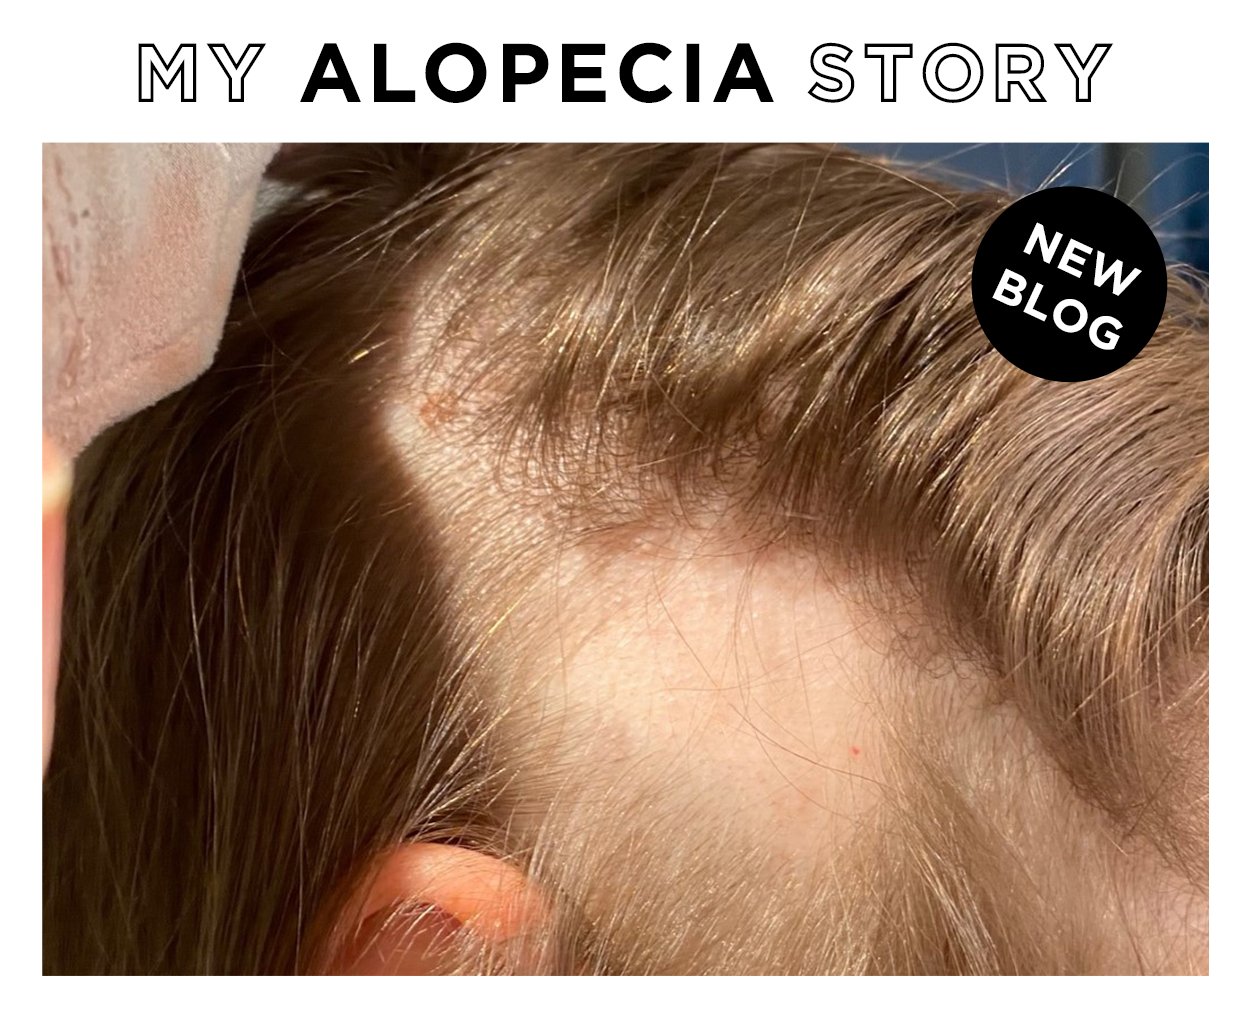 My alopecia story blog